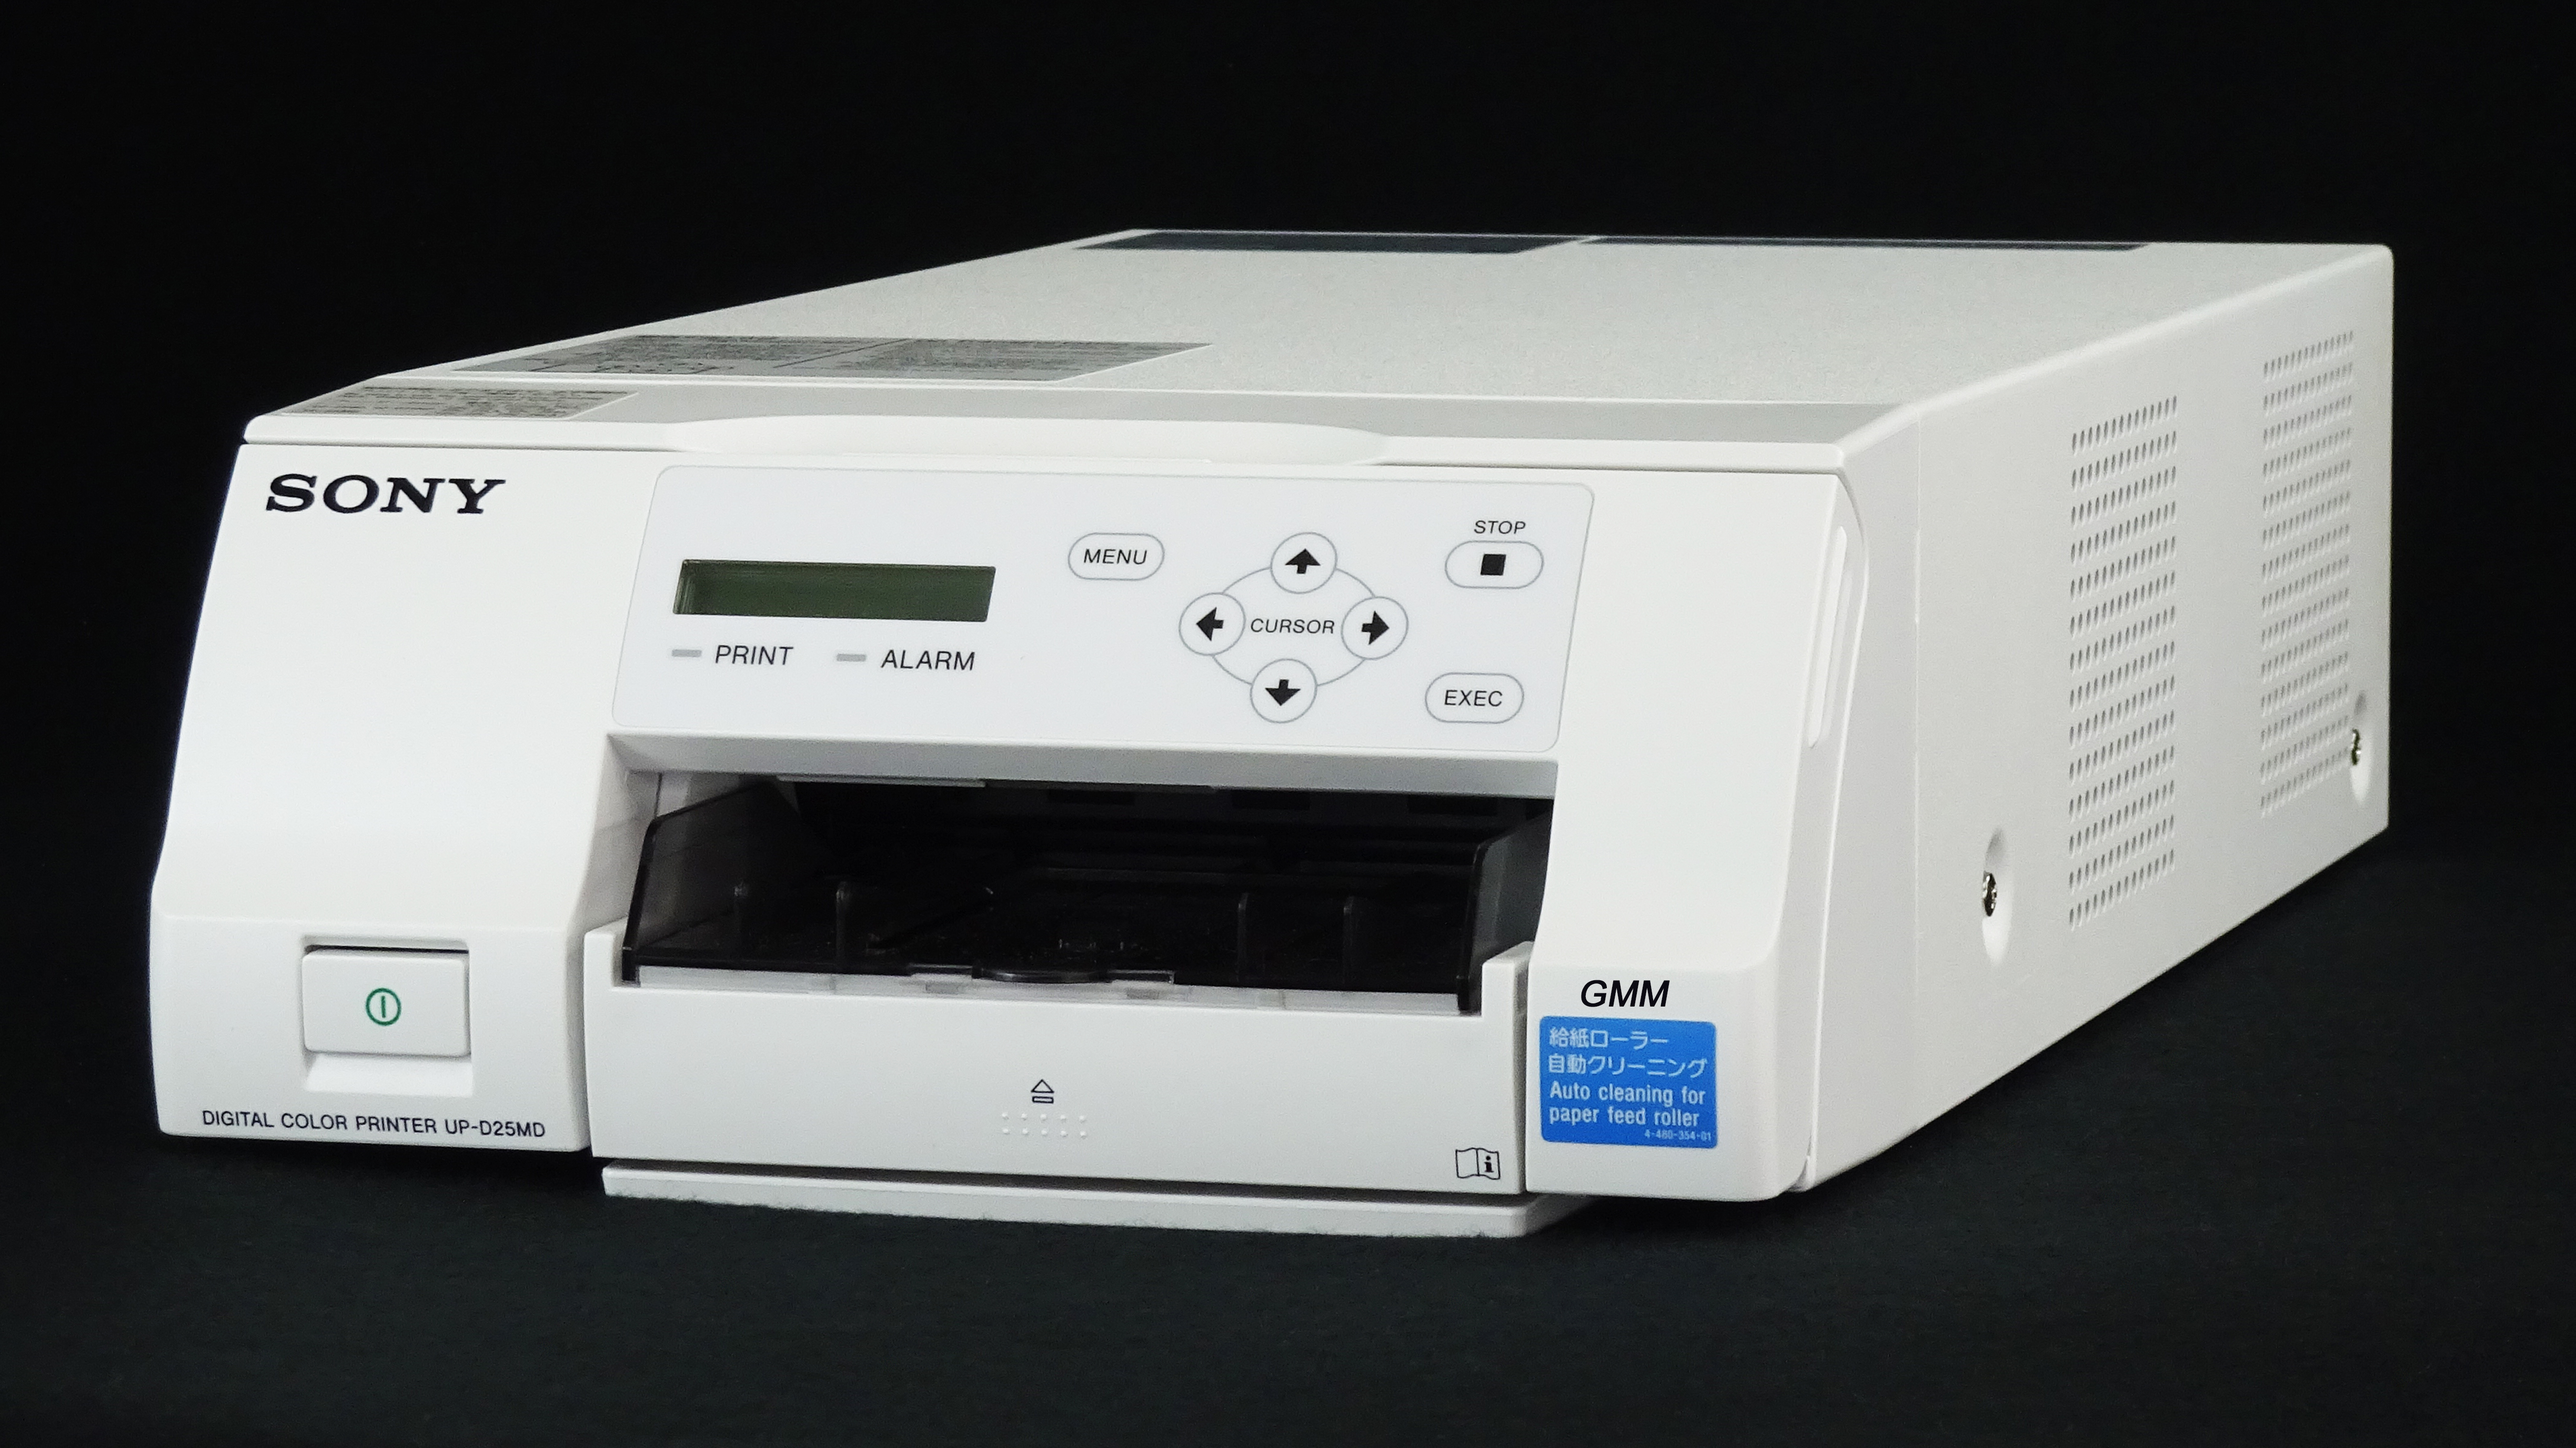 SONY Digital Color Printer UP-D25MD